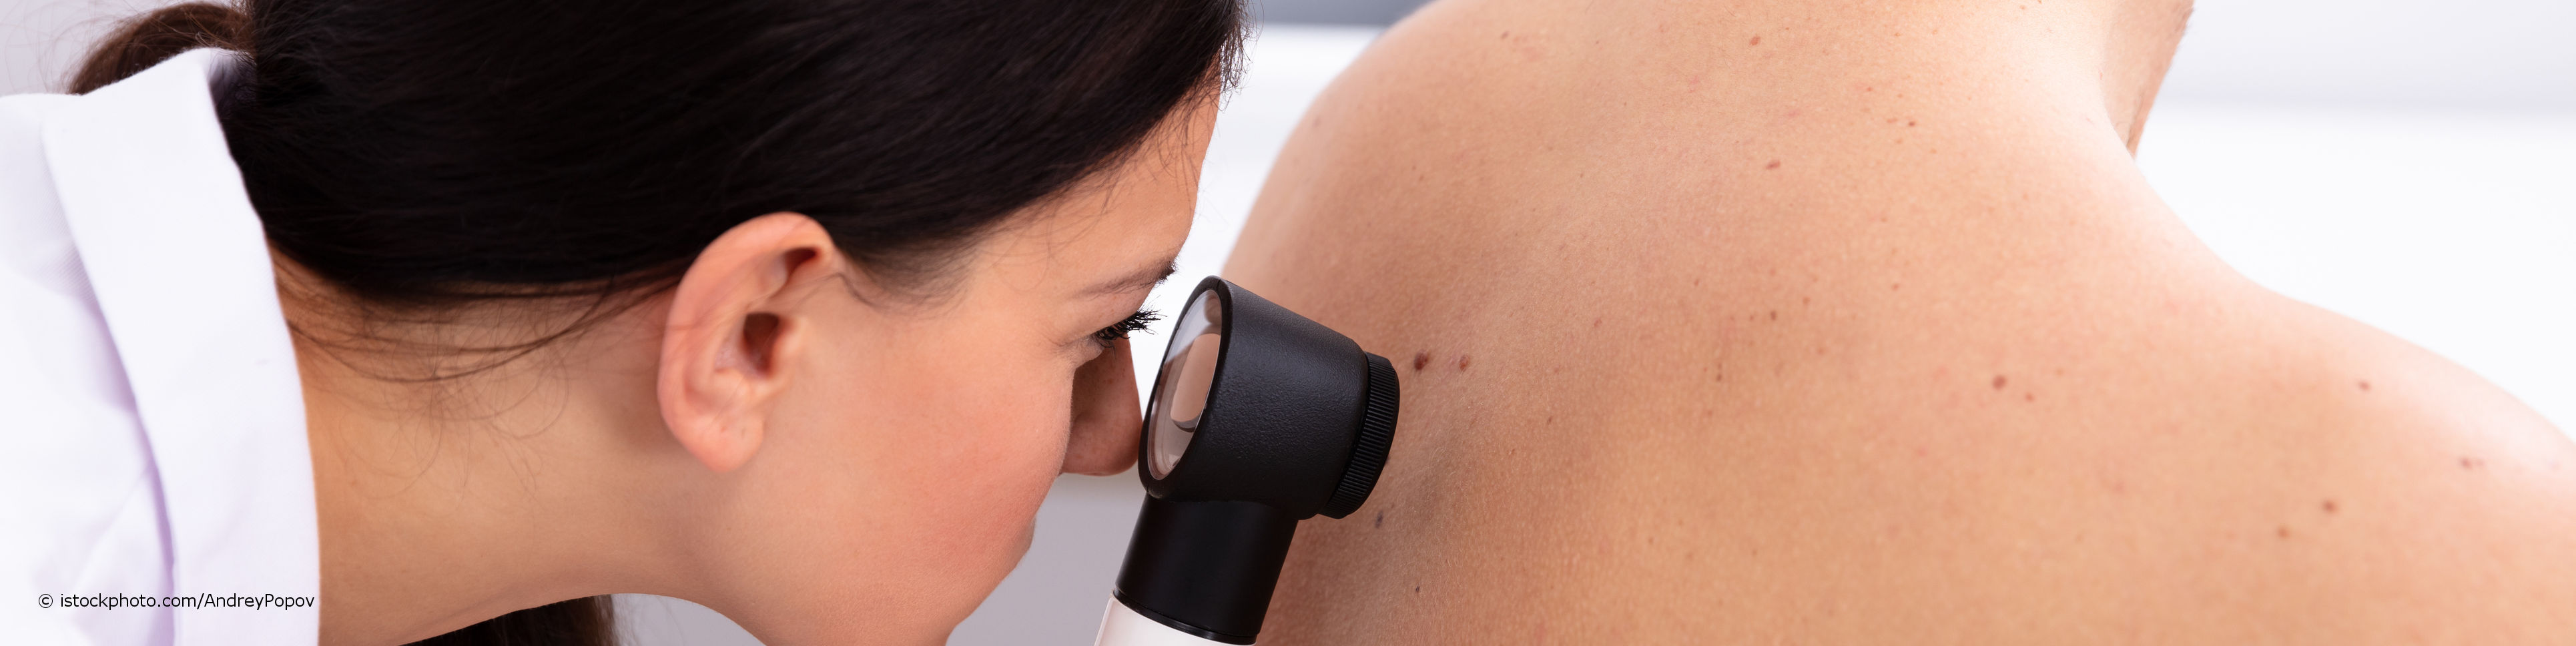 Eine Hautärztin untersucht im Rahmen der Hautkrebs-Früherkennung mit einem Dermatoskop die Leberflecken auf dem Rücken eines Patienten